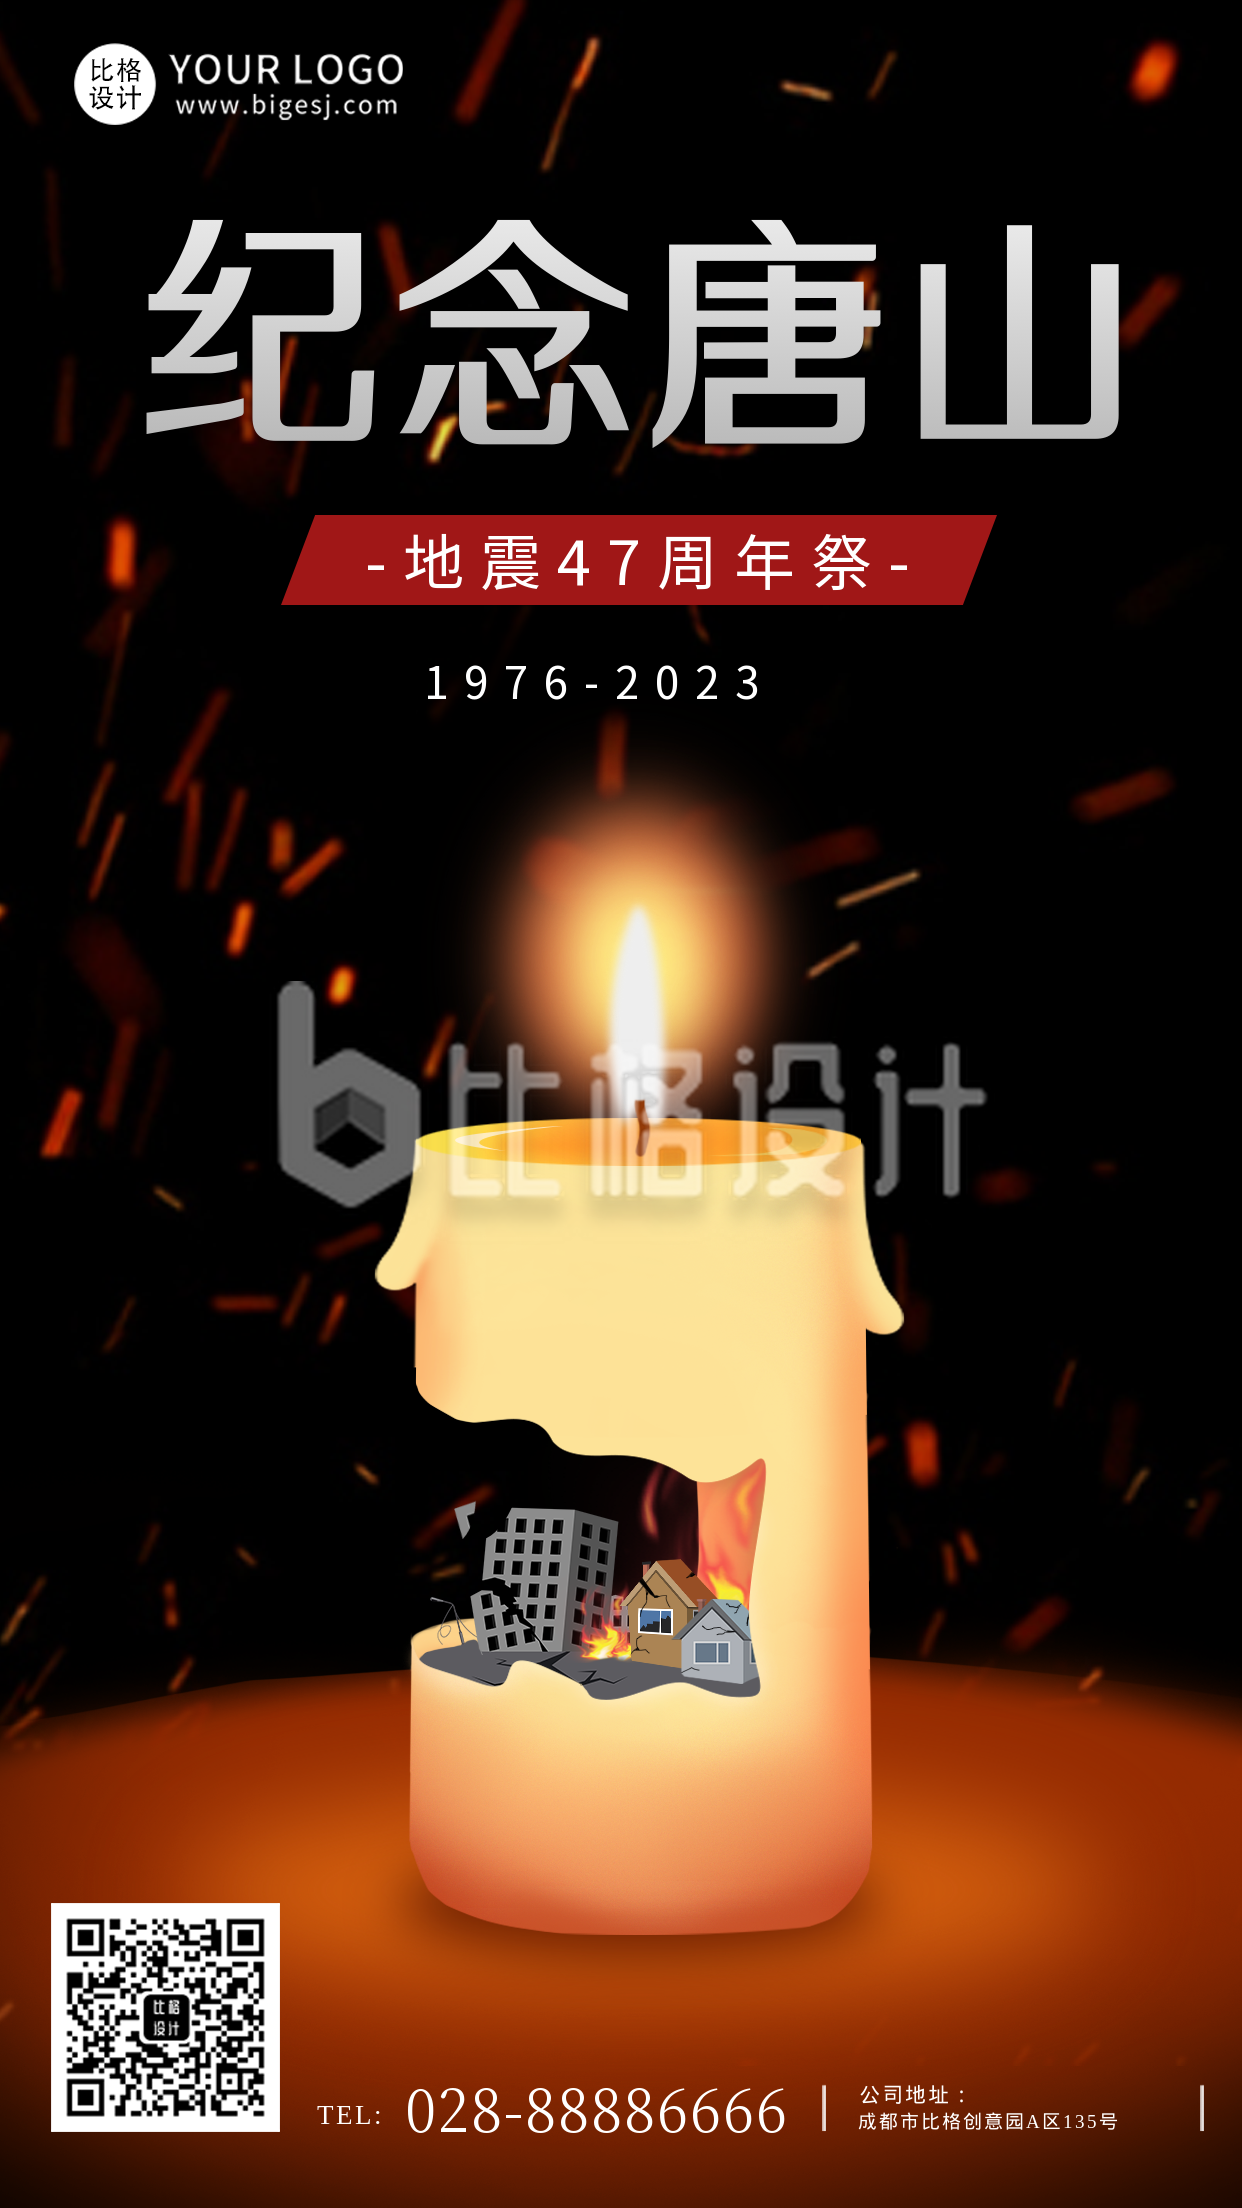 唐山地震纪念日黑色蜡烛创意手绘公众号首图